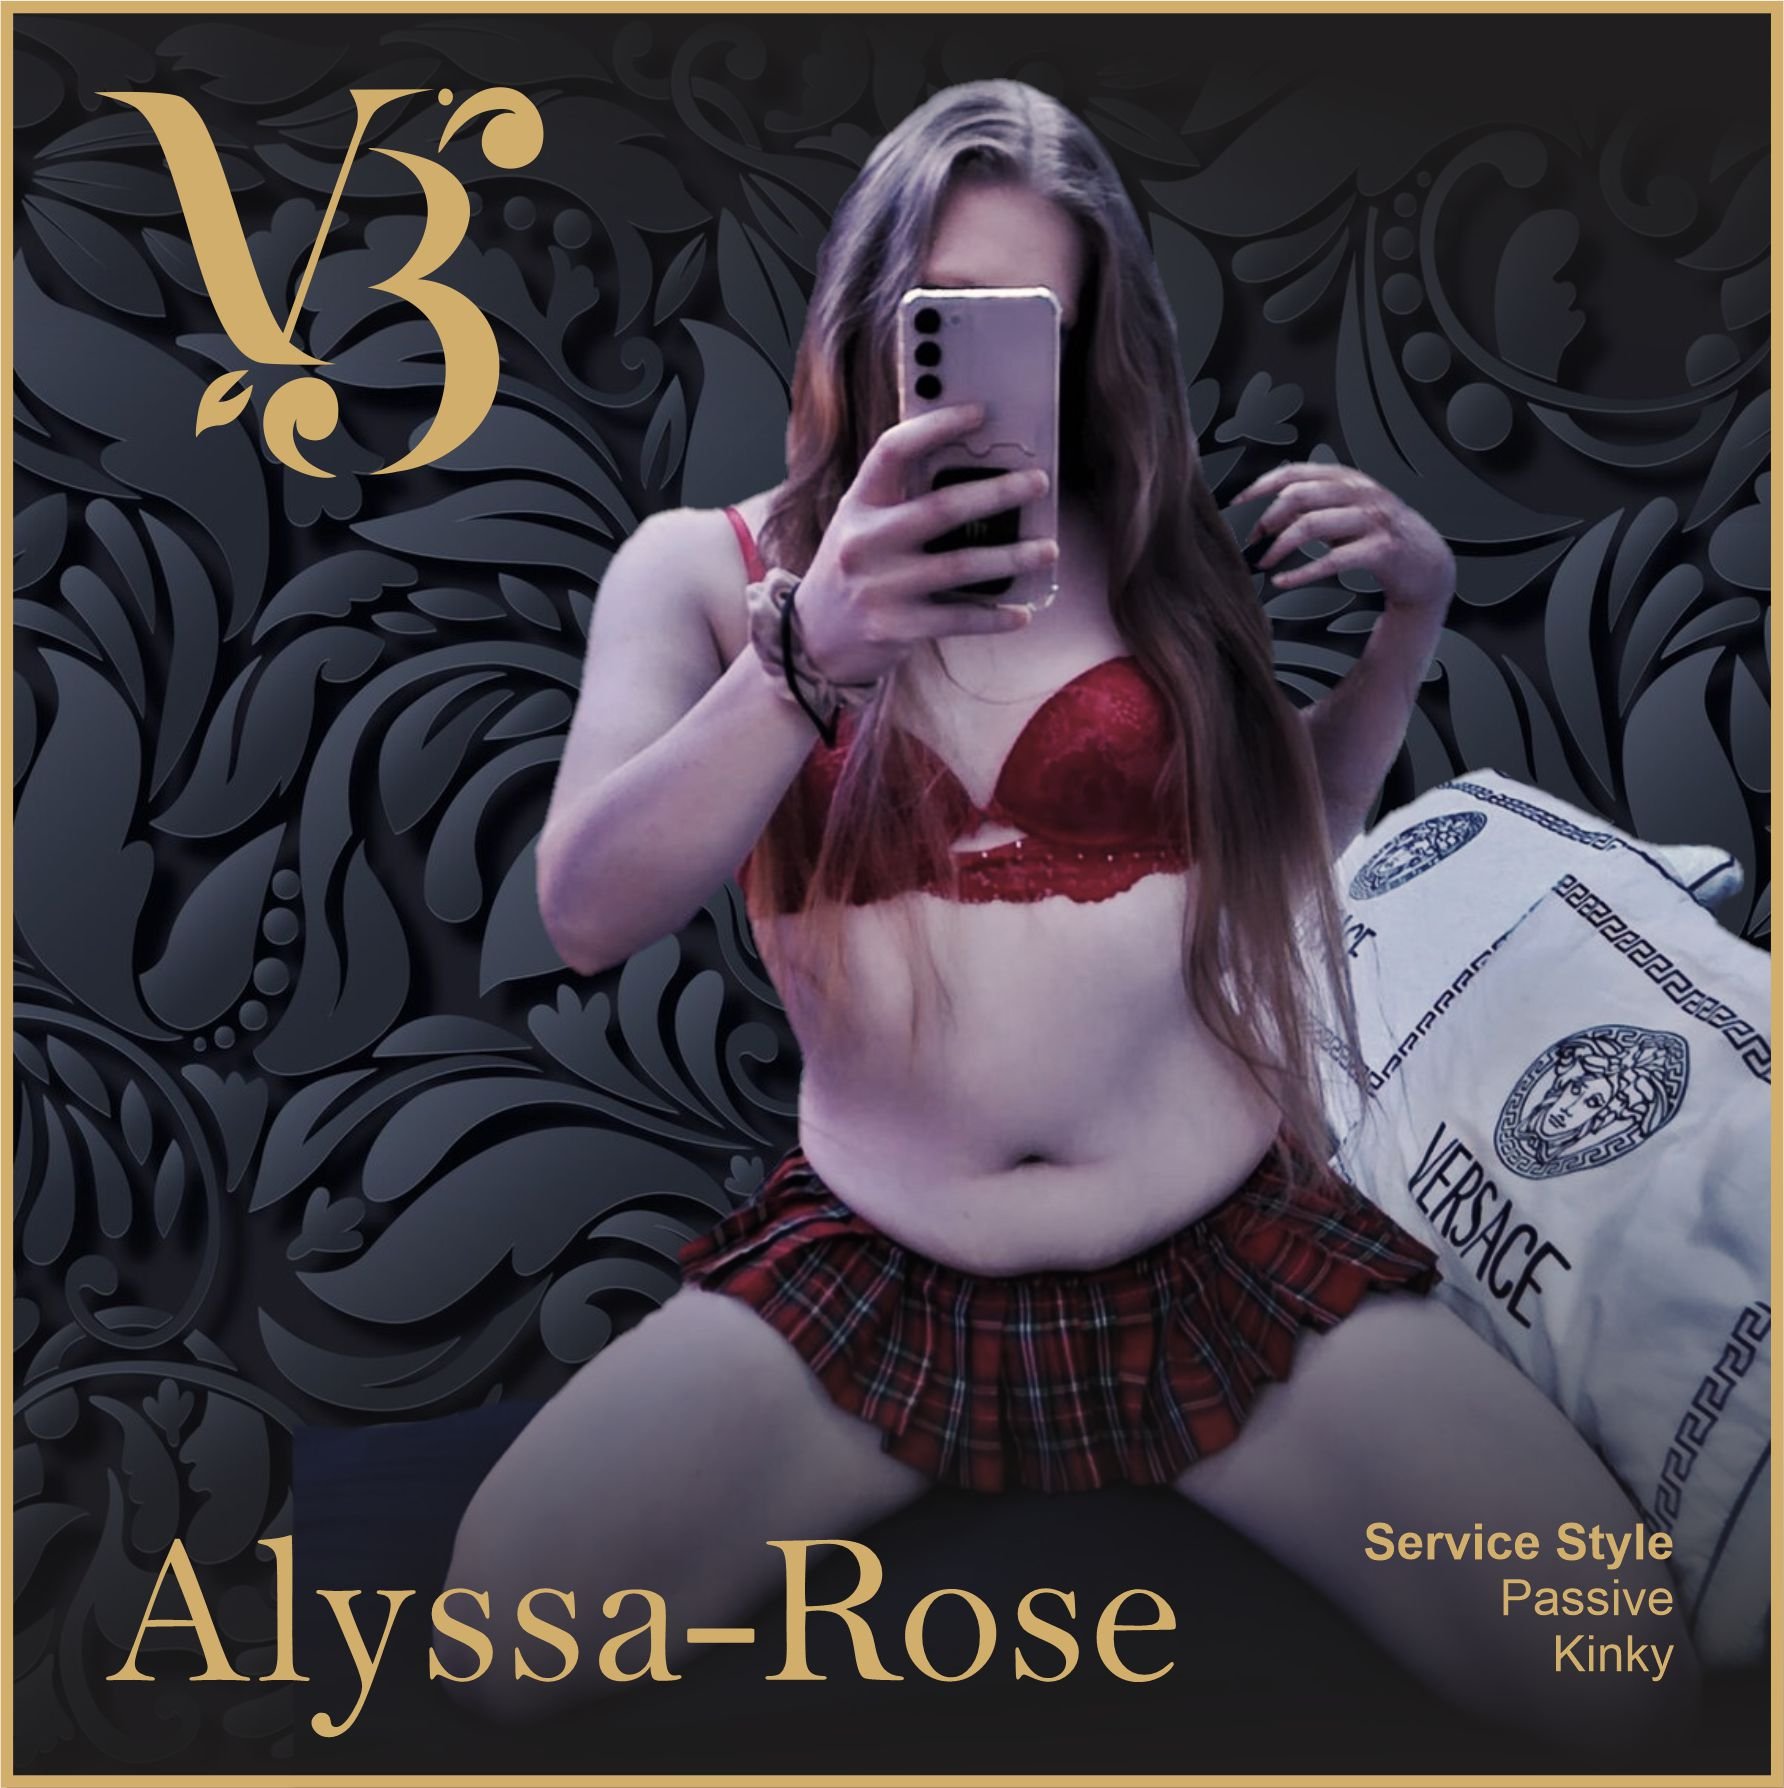 girls profiles Alyssa-Rose 2.jpg